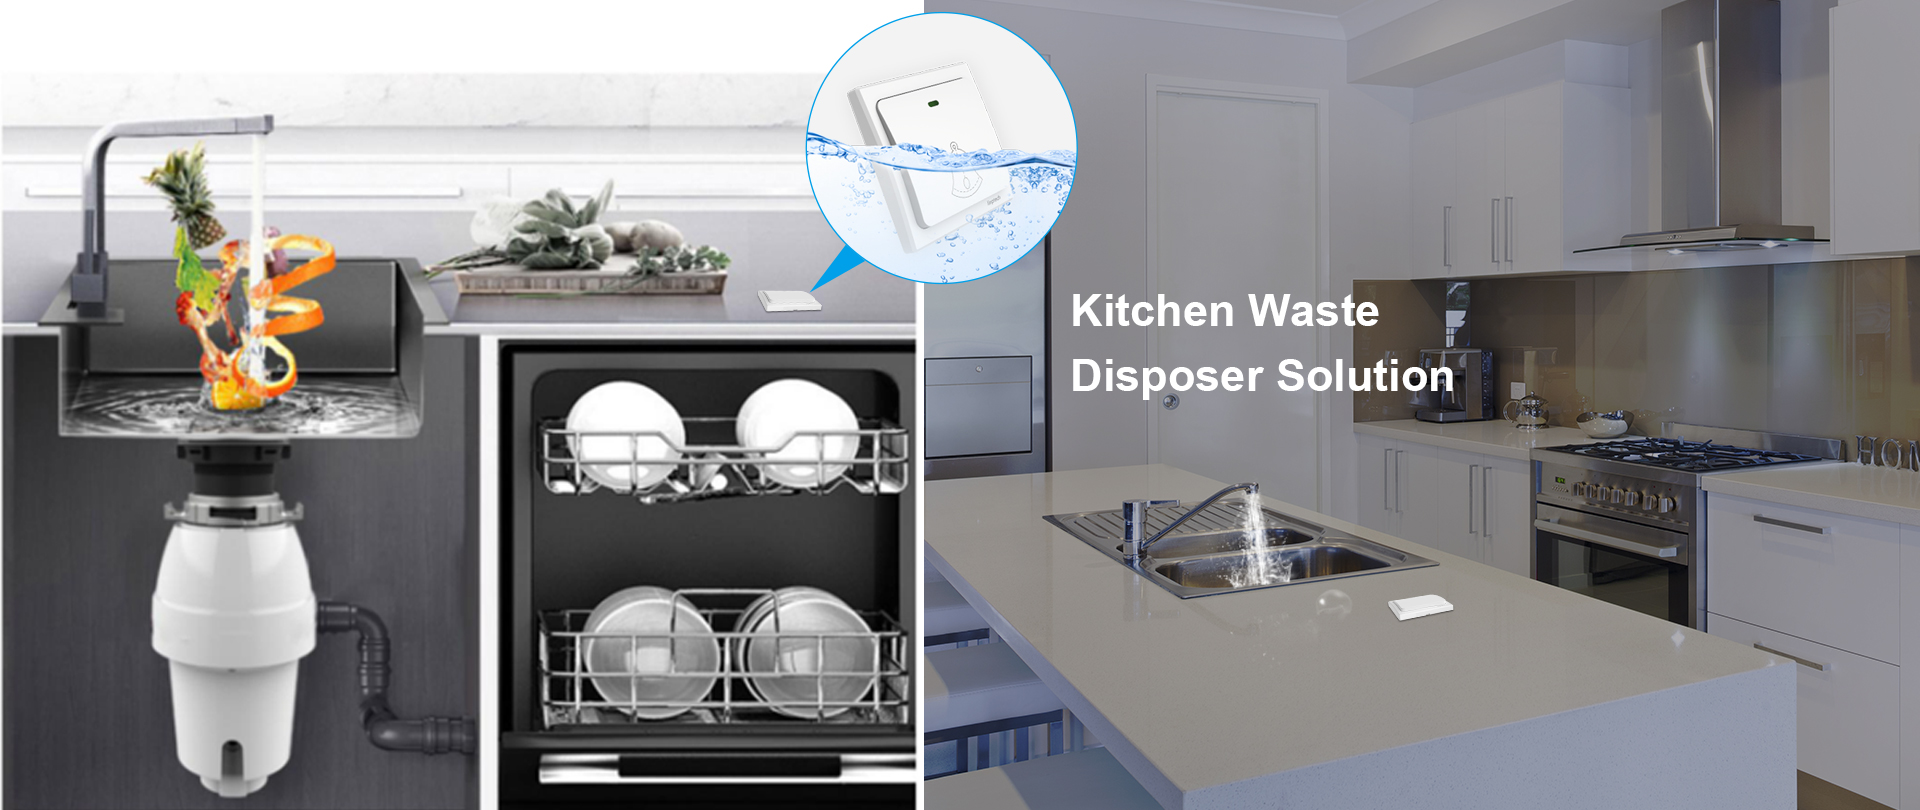 Kitchen Waste Disposer Solution